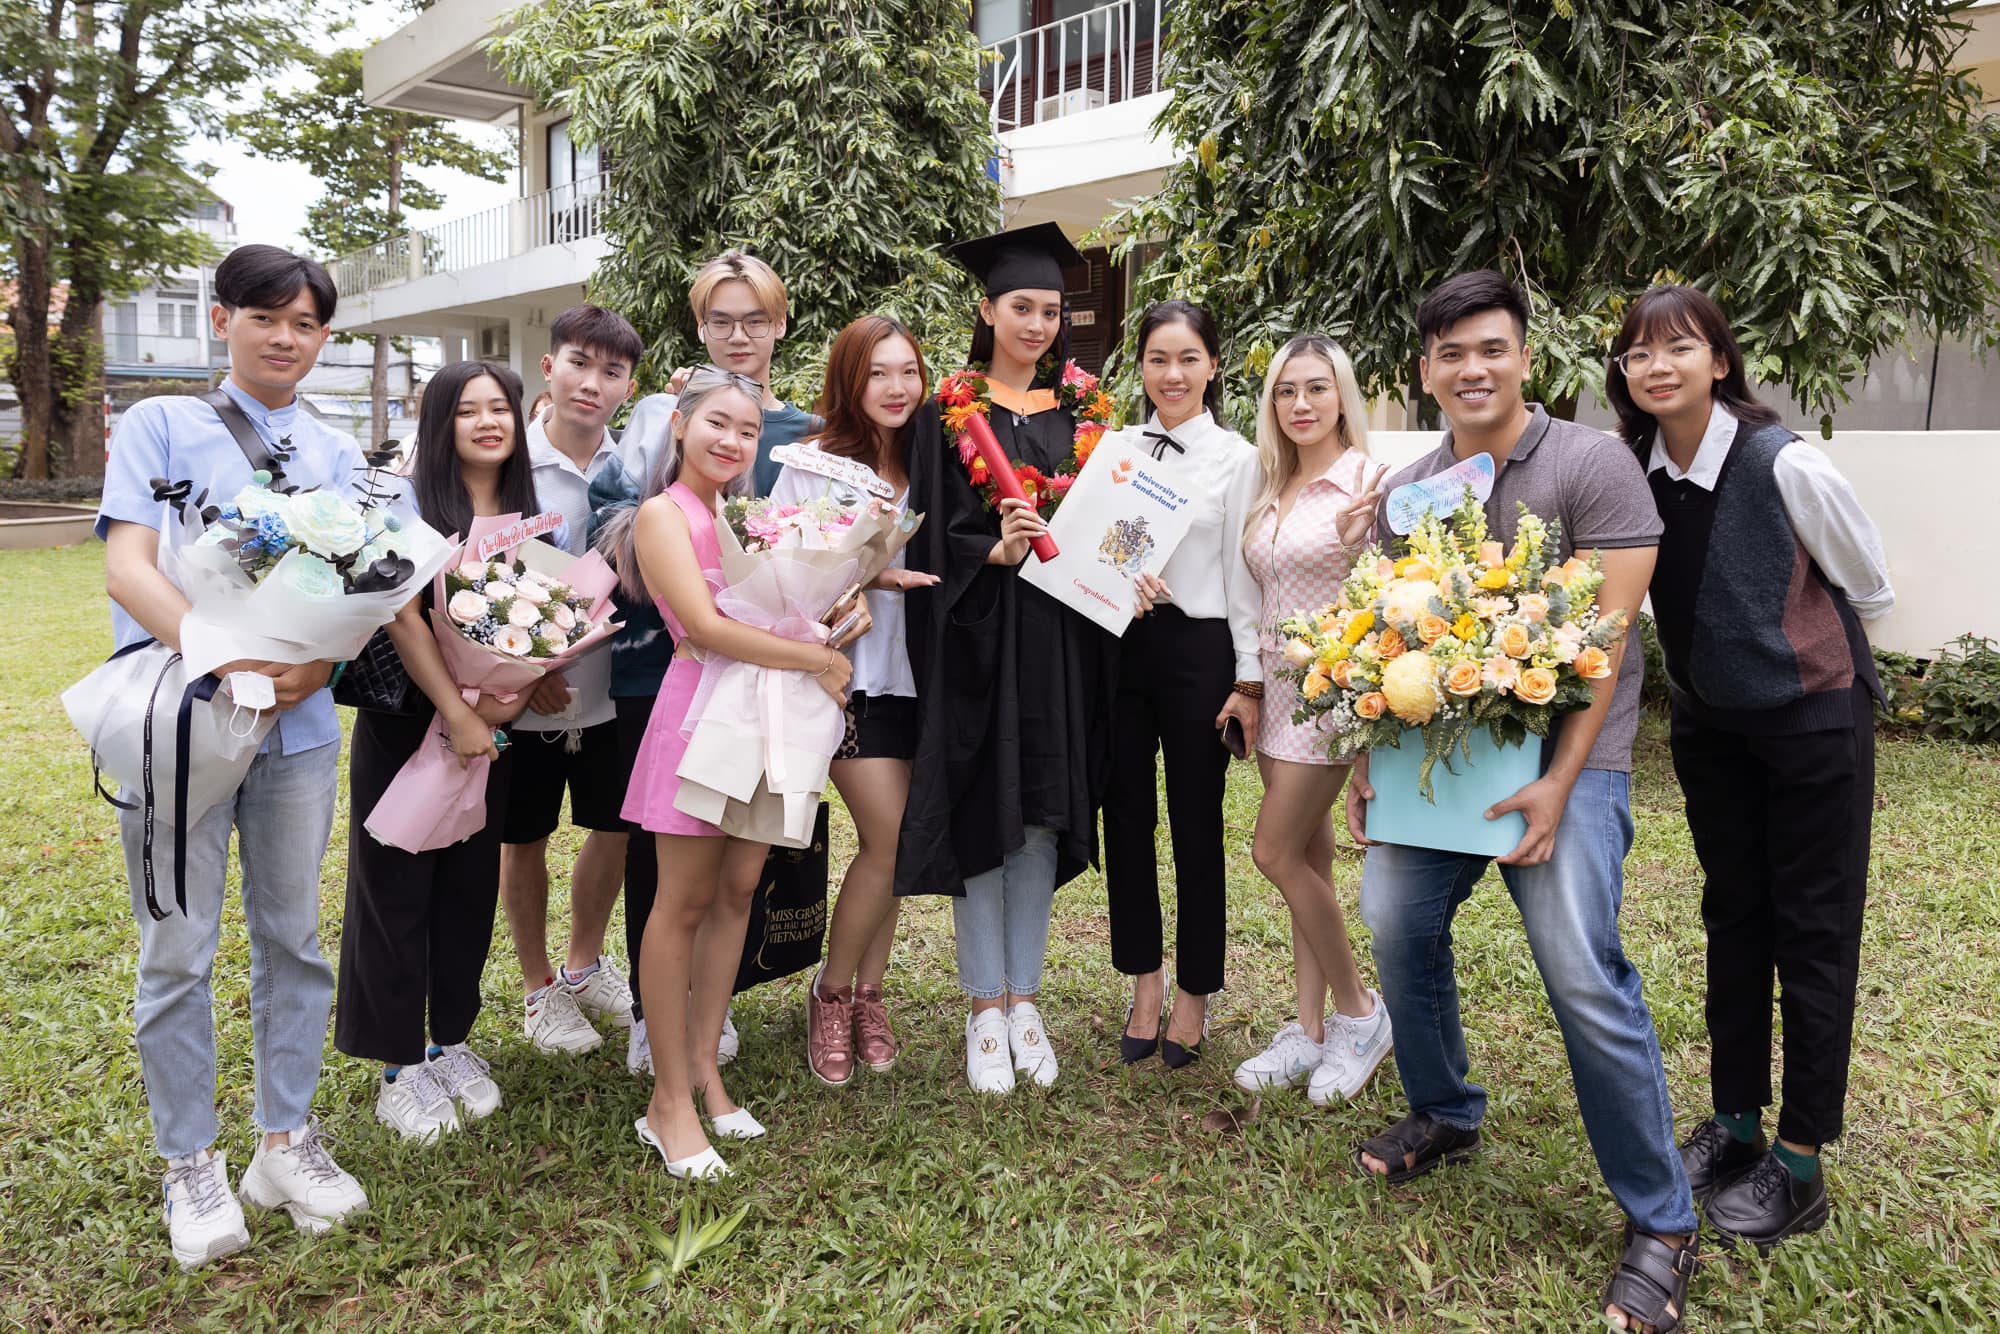 Chuyện làng sao - Hoa hậu Tiểu Vy trong buổi lễ tốt nghiệp đại học (Hình 9).